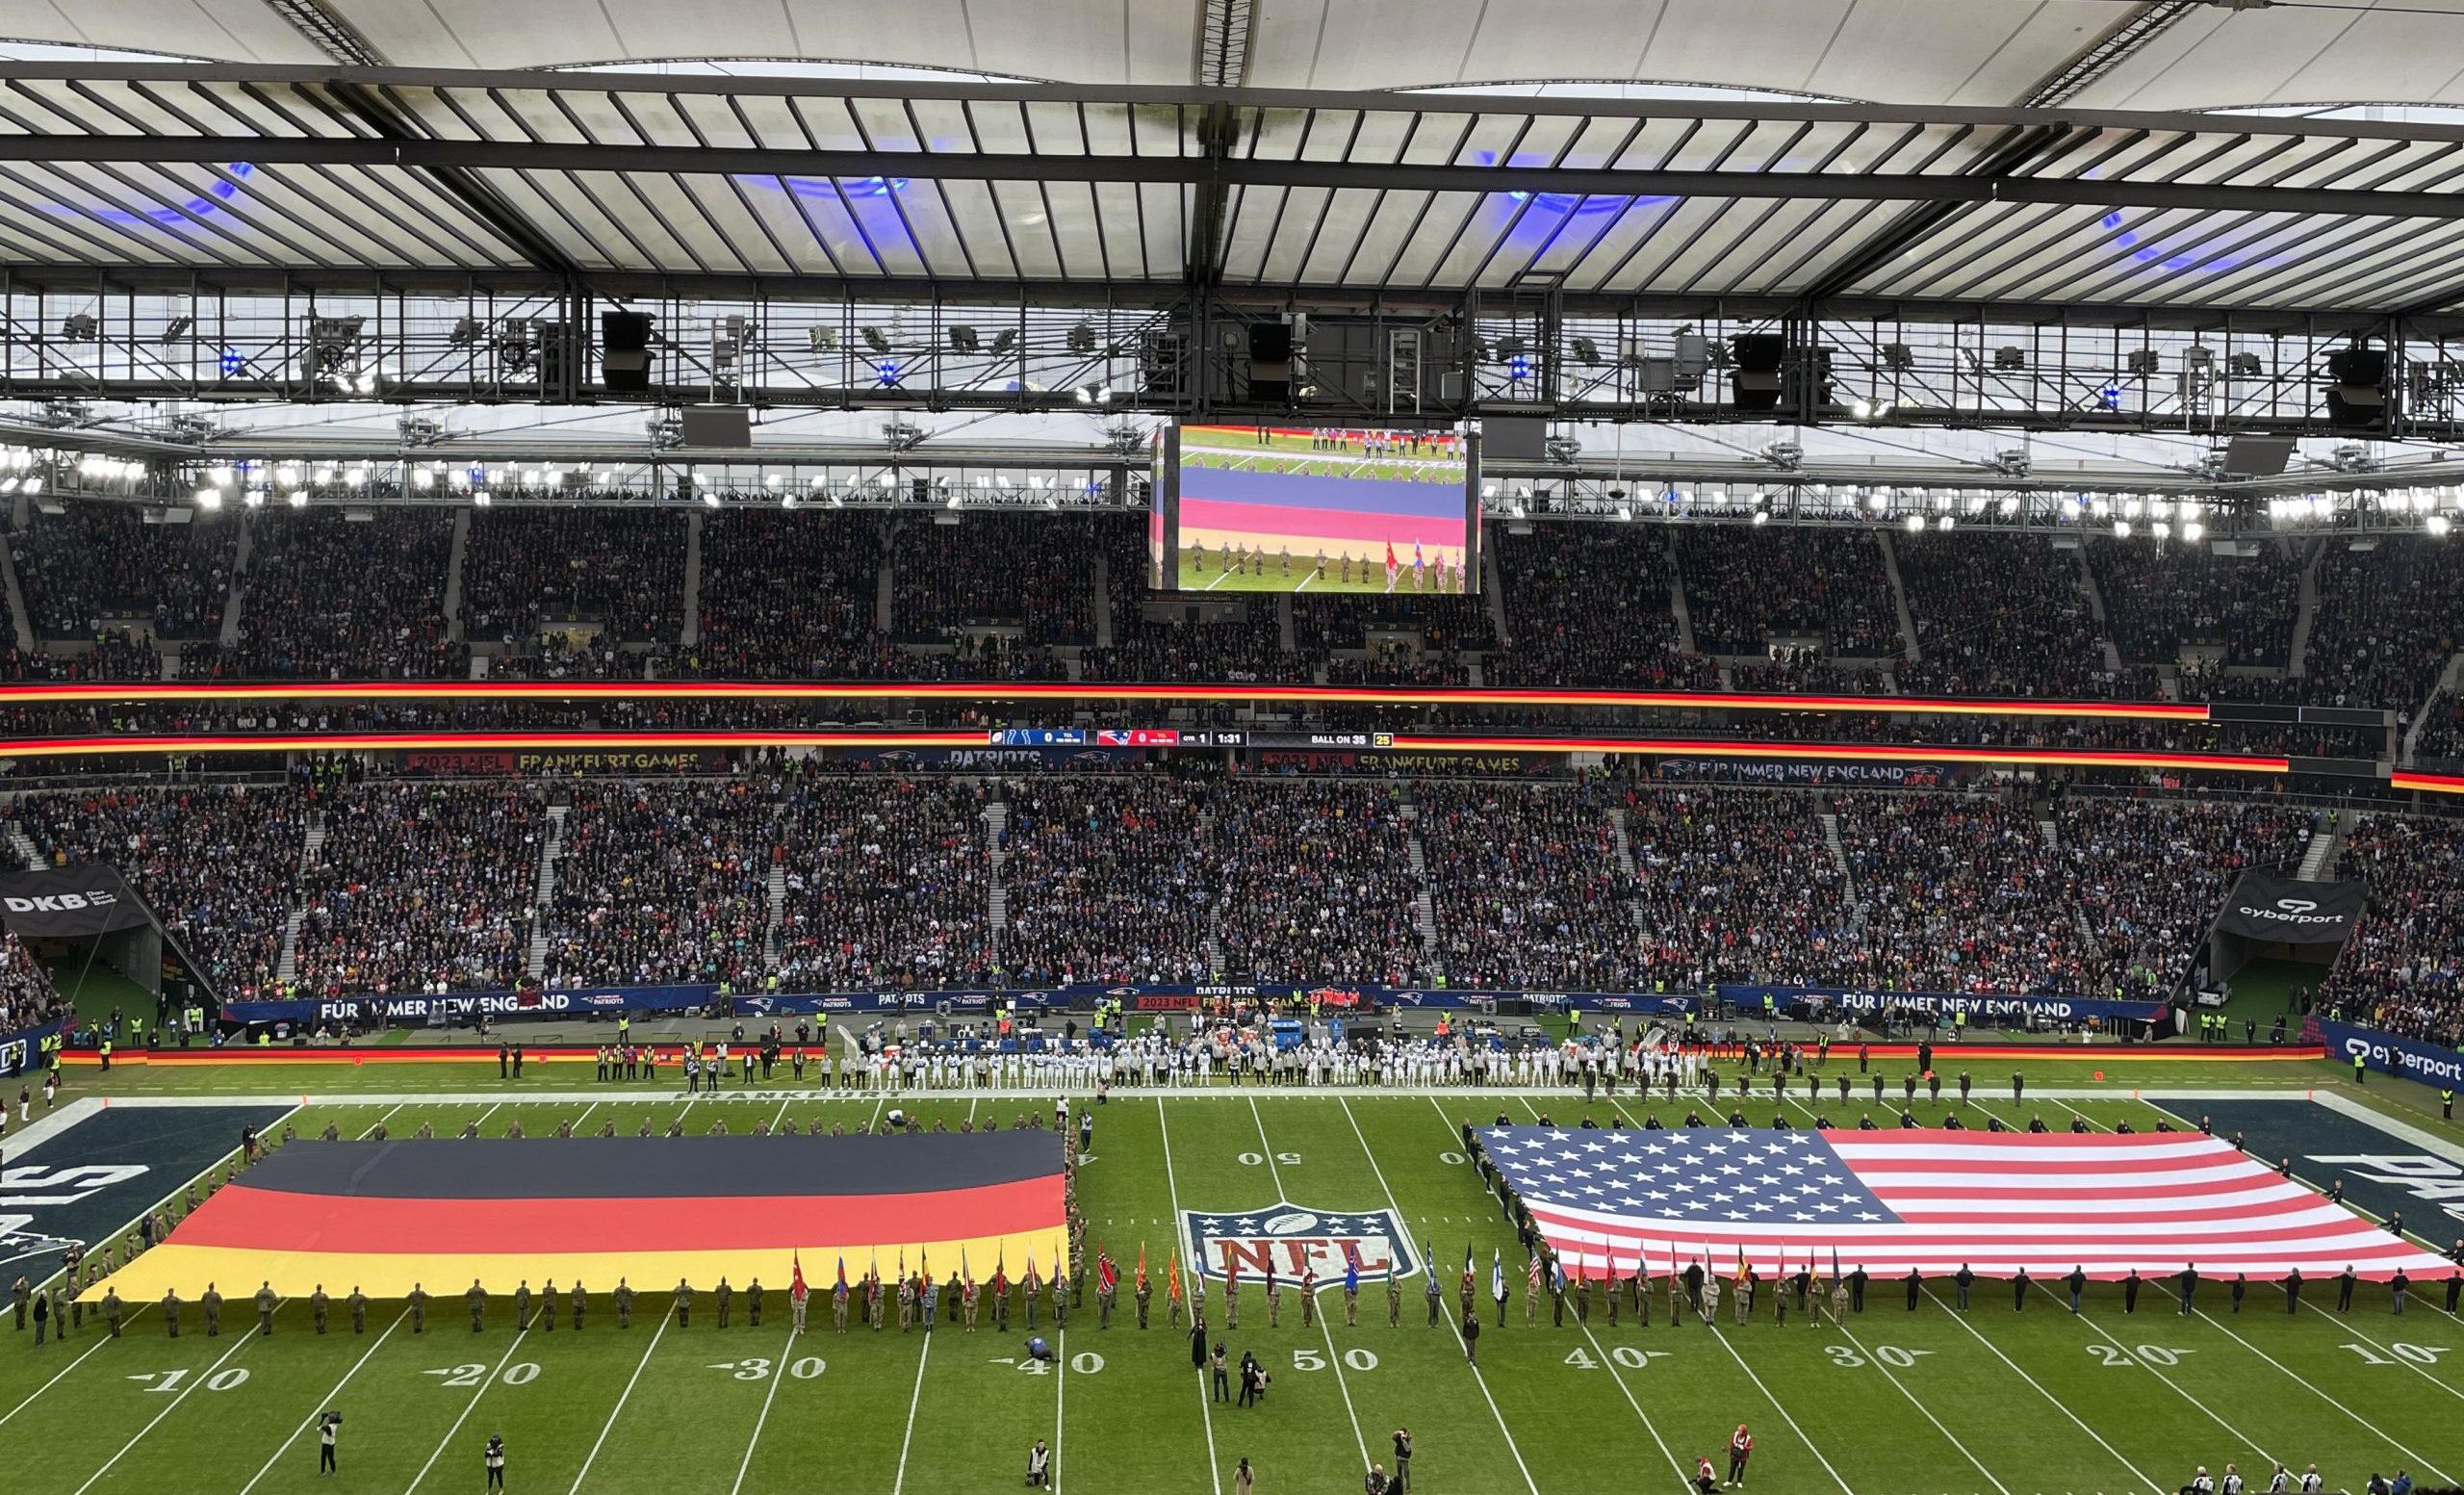 FootballR - NFL - Ein Stadion mit NFL-Spektakel mit amerikanischen und deutschen Flaggen auf dem Spielfeld. Viele Fußballstars und Prominente vor Ort.